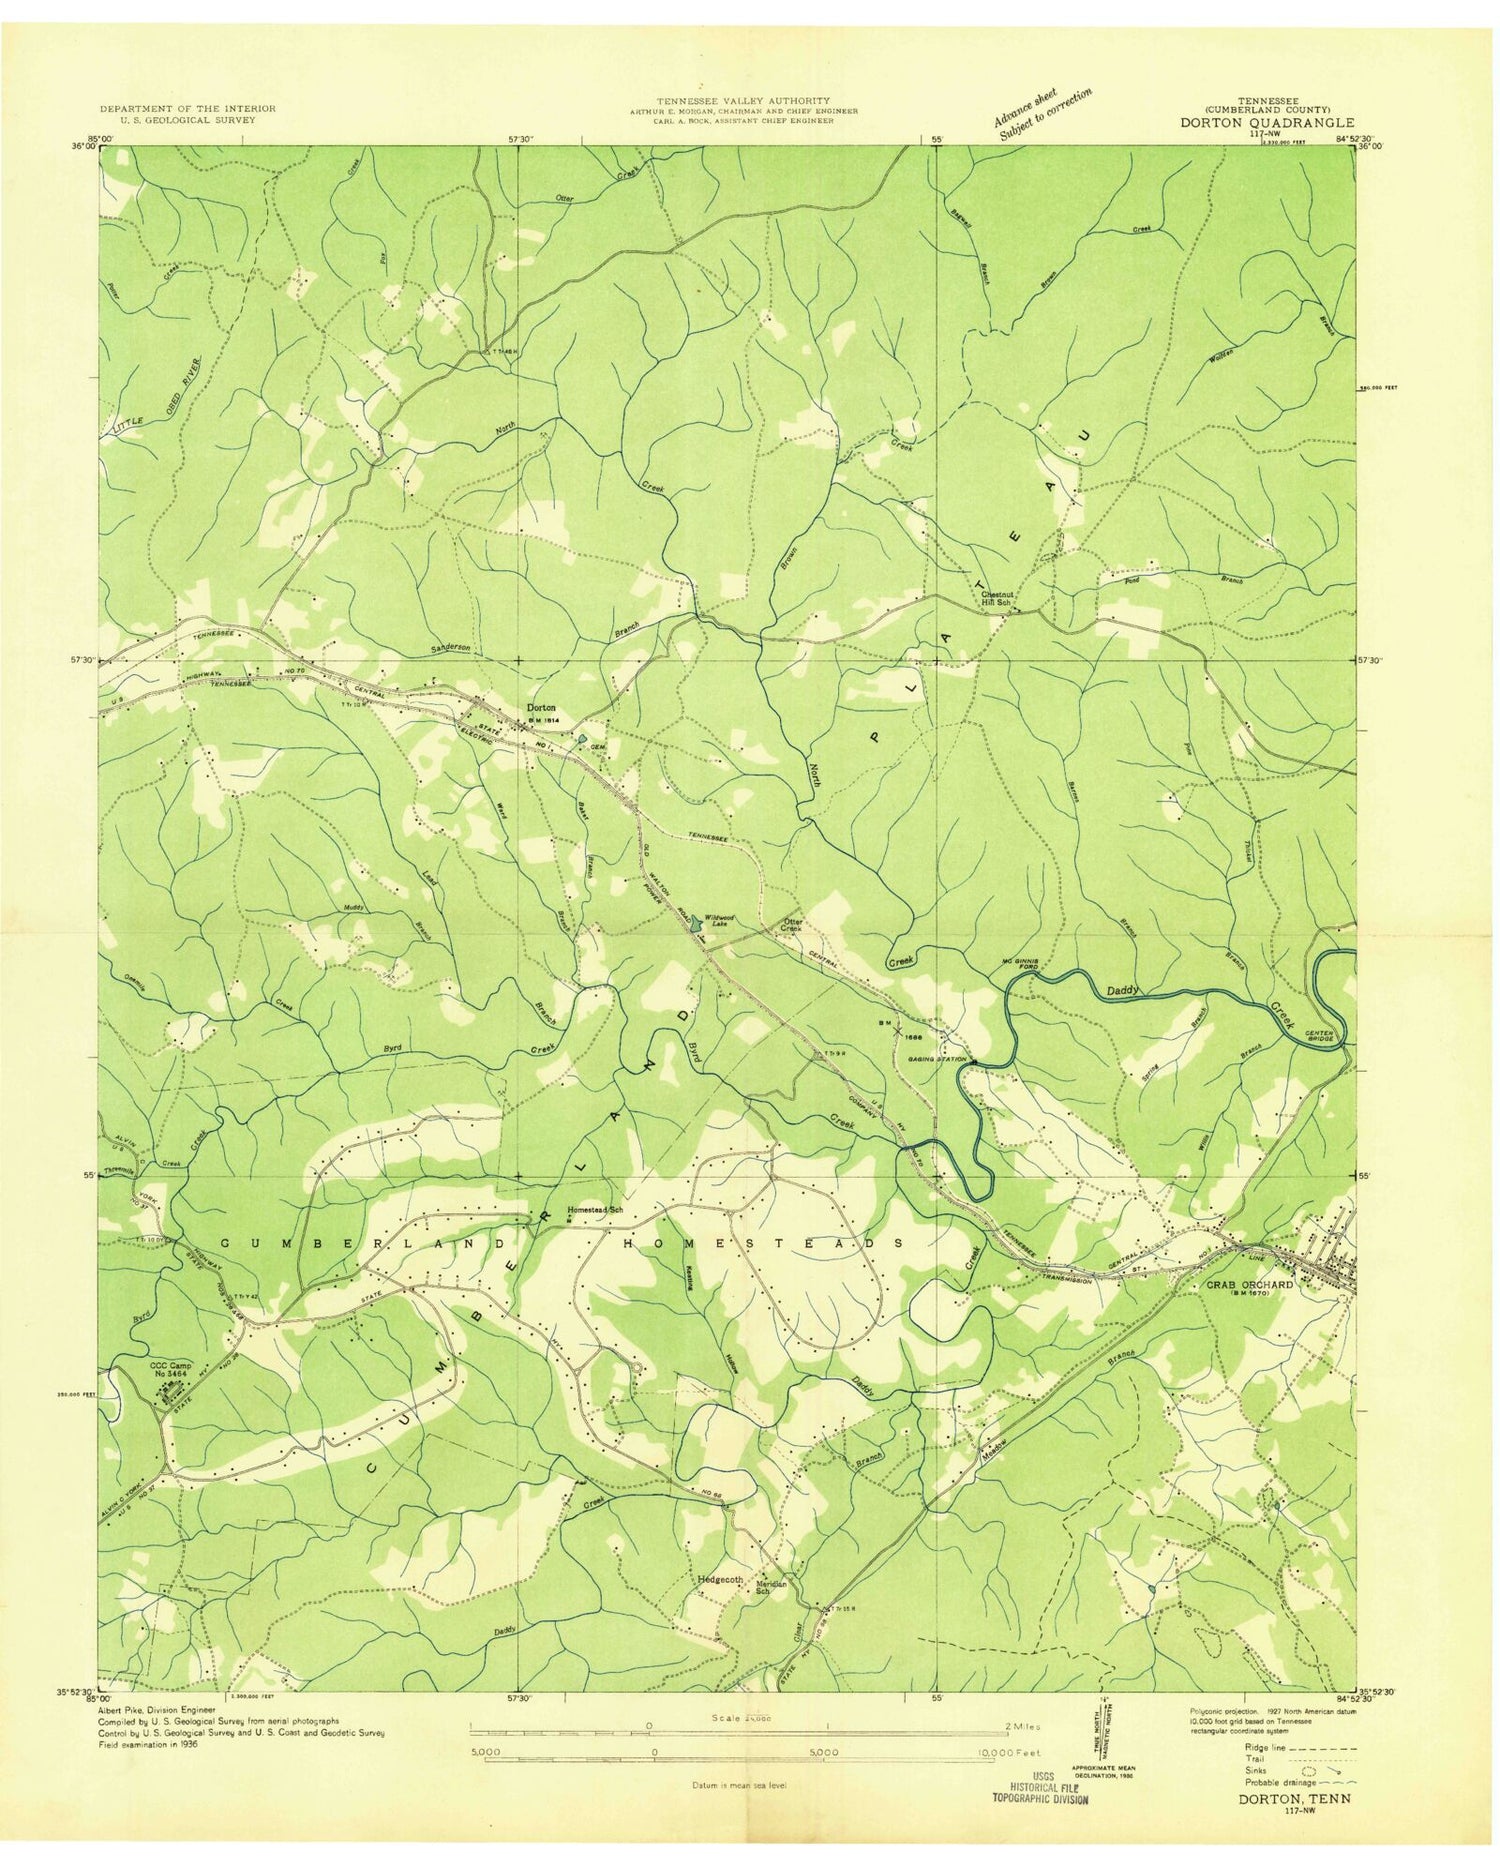 Classic USGS Dorton Tennessee 7.5'x7.5' Topo Map Image